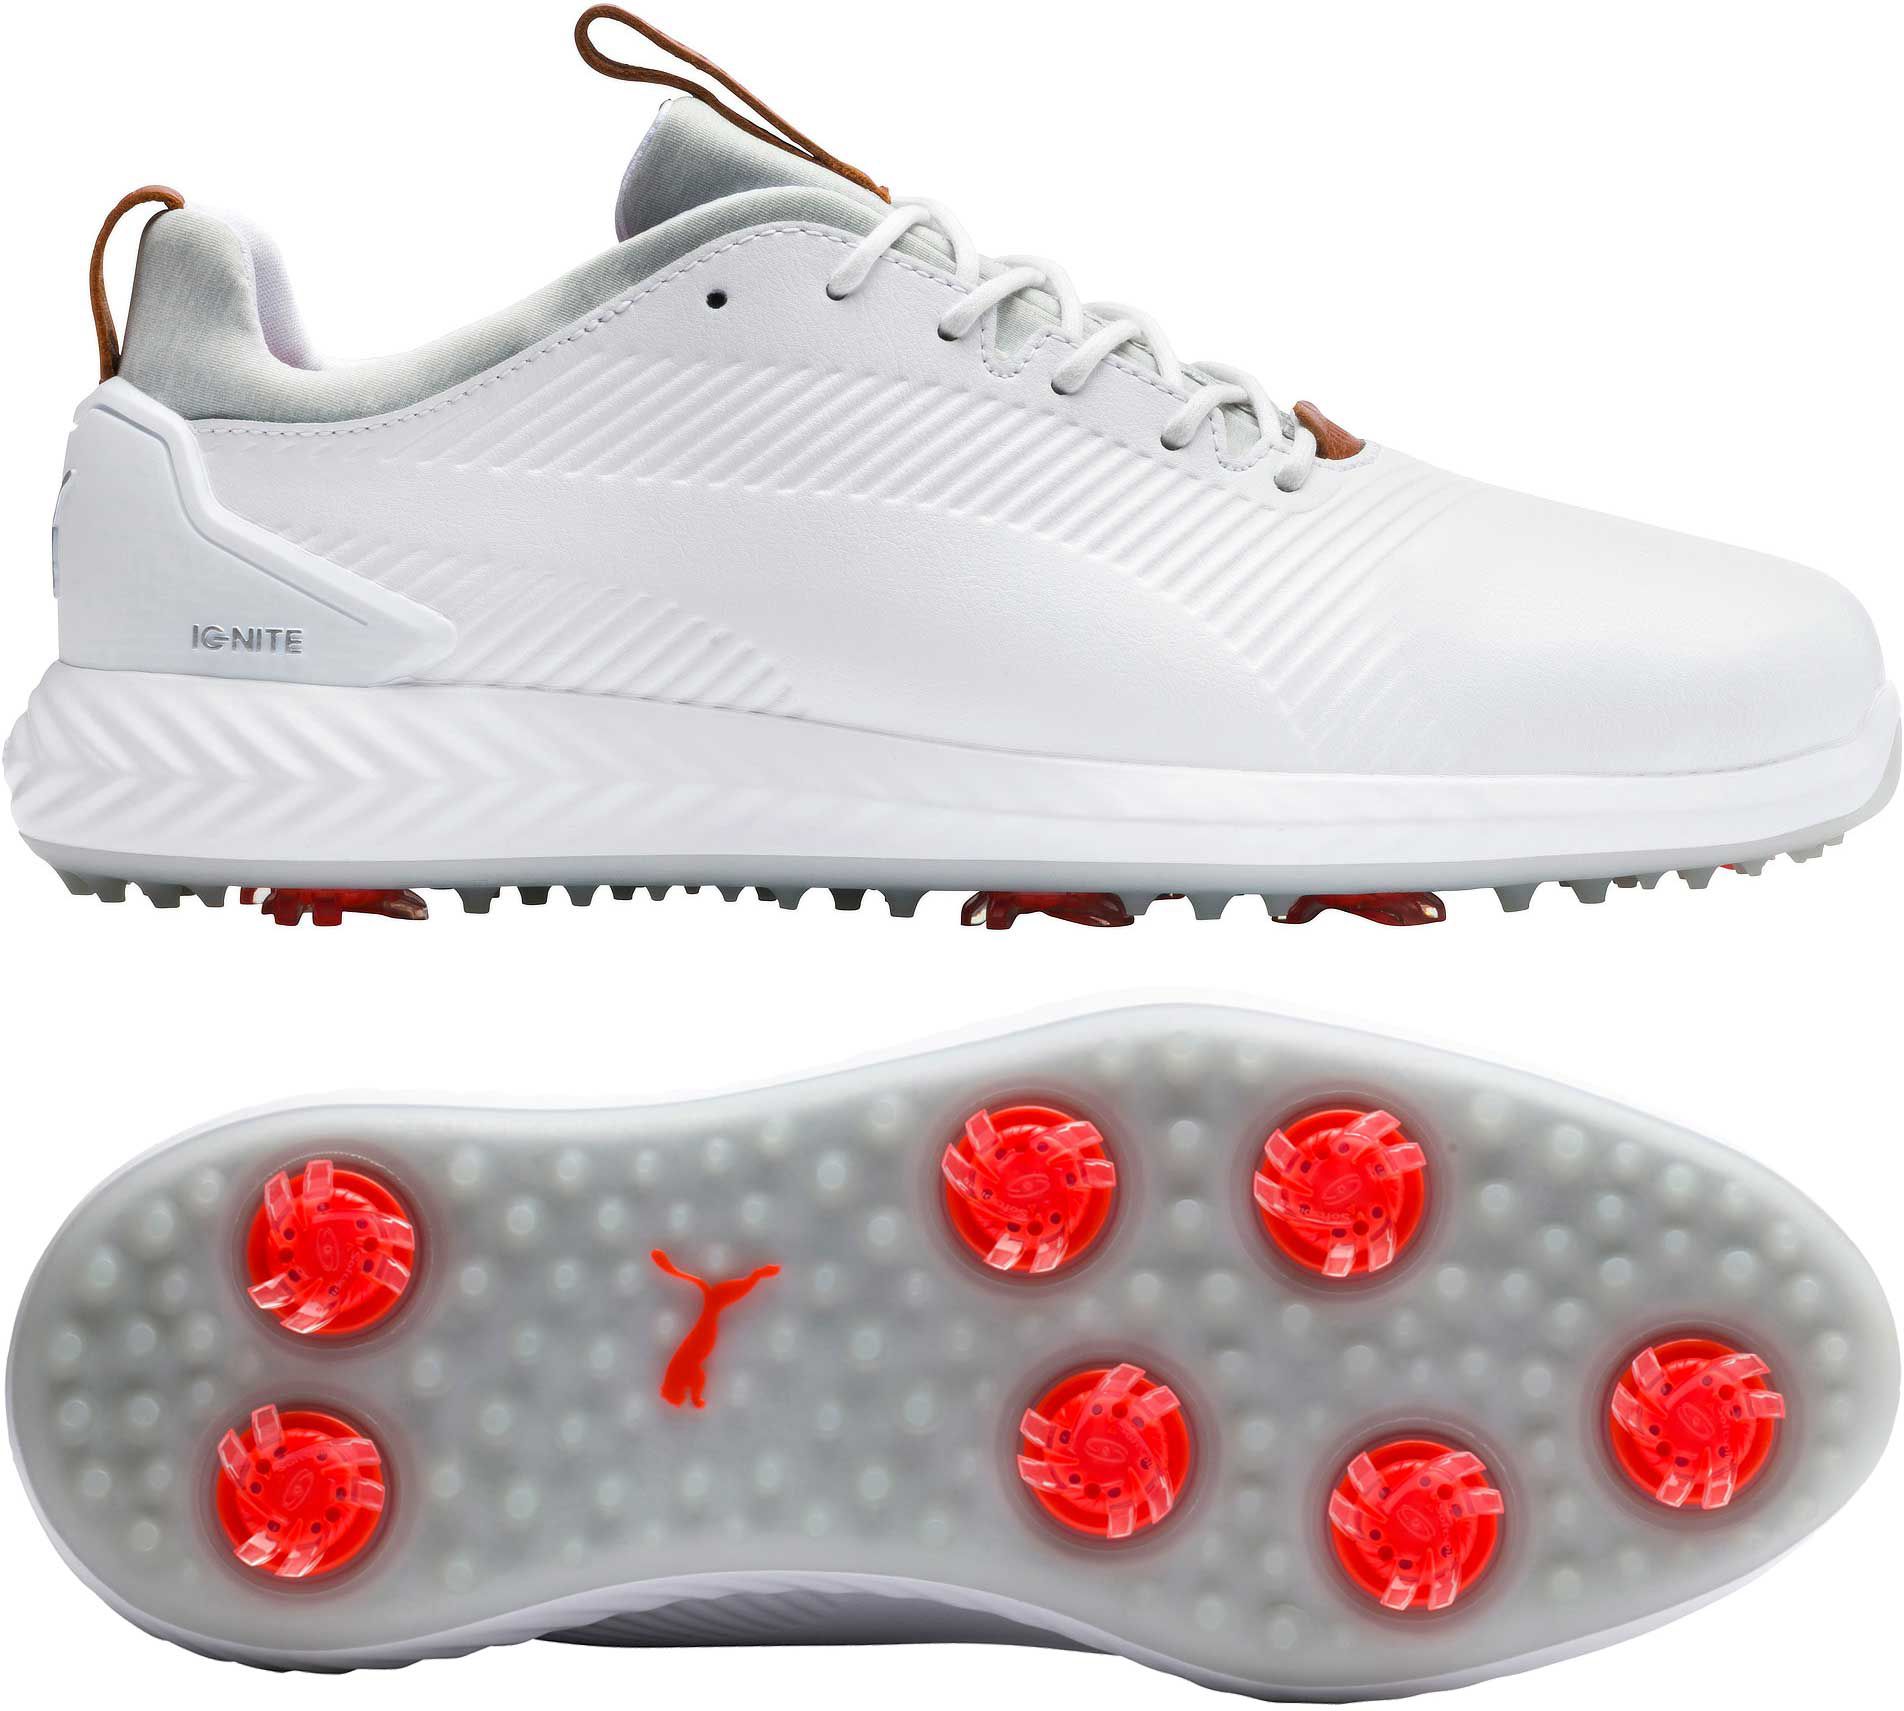 puma ignite white golf shoes